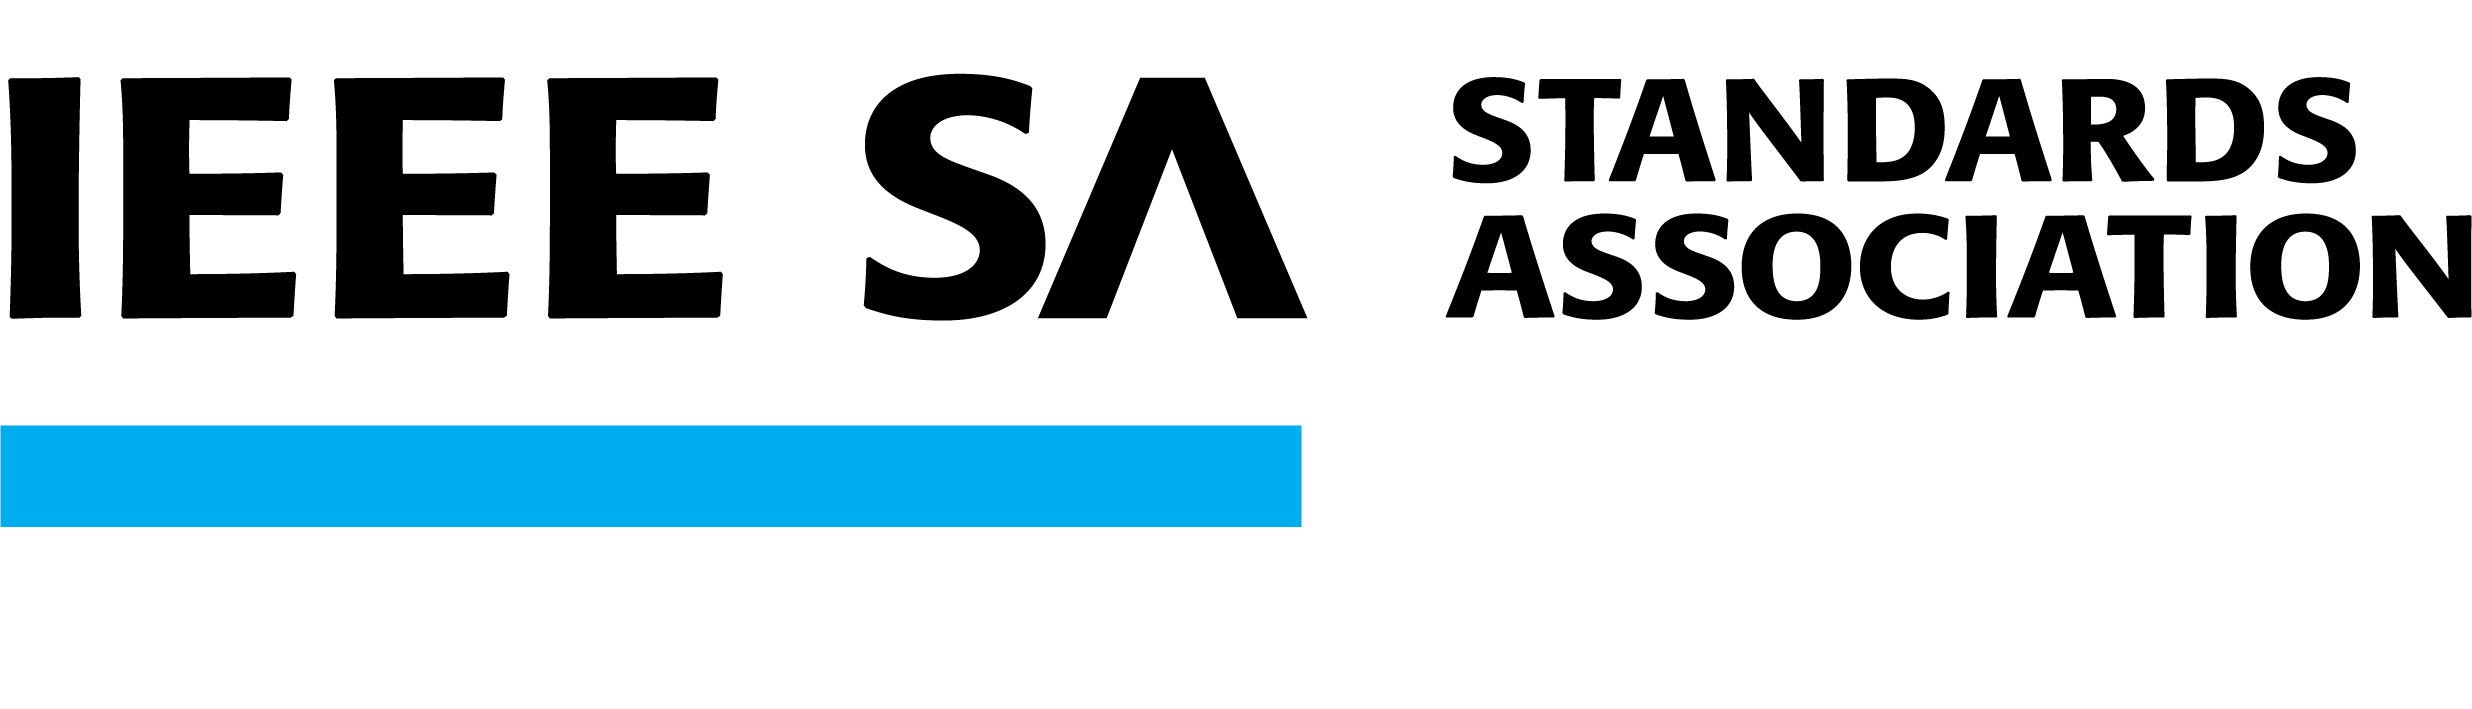 IEEE Standards Association logo